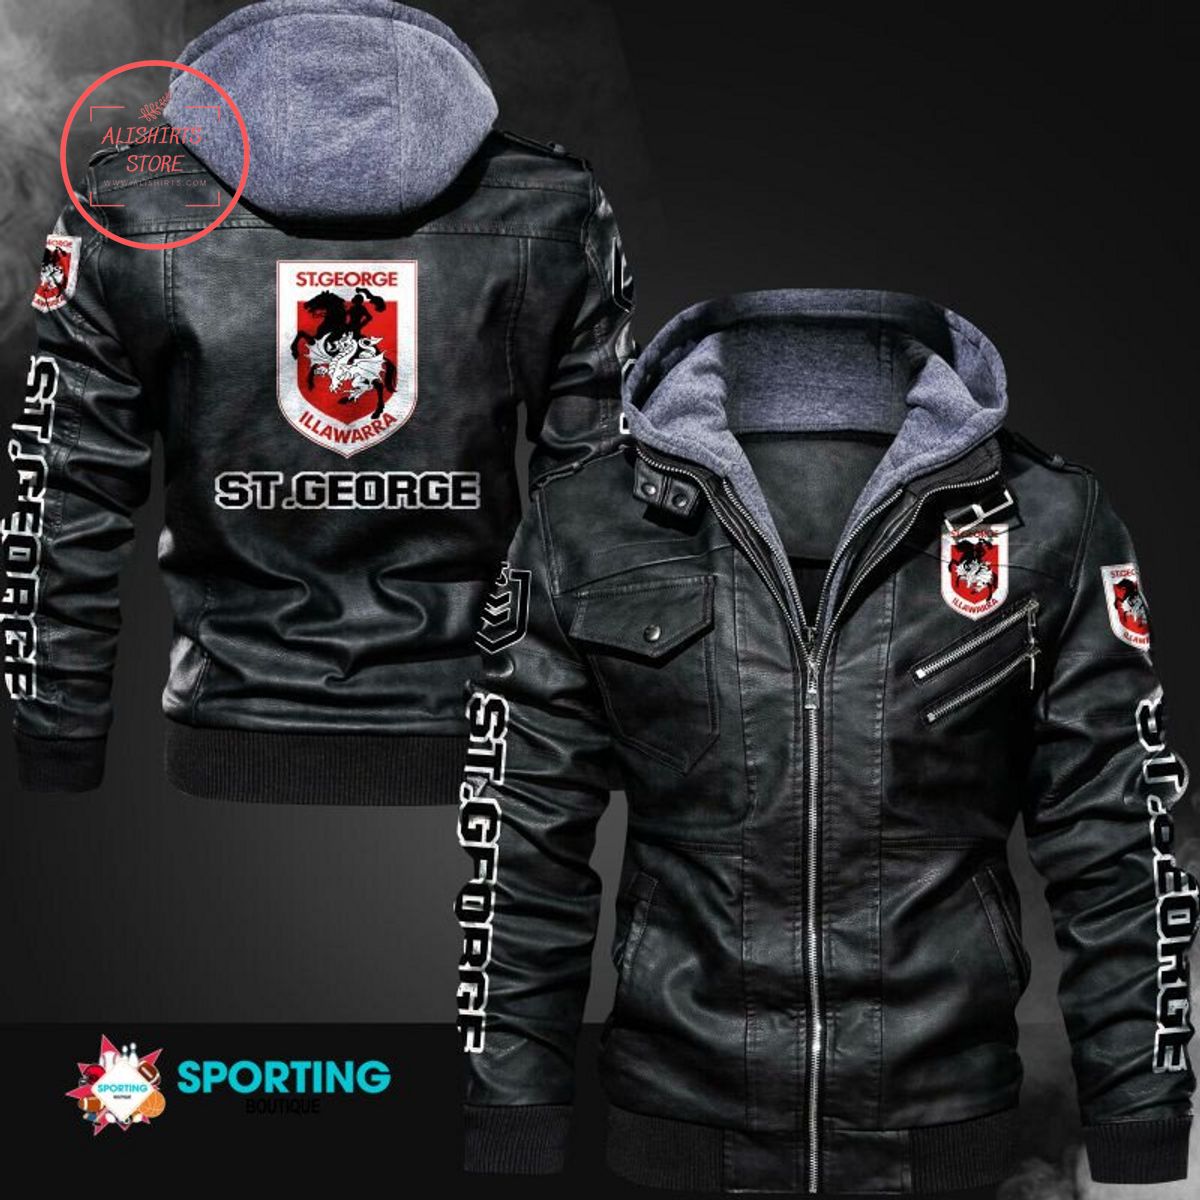 NRL St. George Illawarra Dragons Logo Leather Jacket Hooded Fleece For Fan